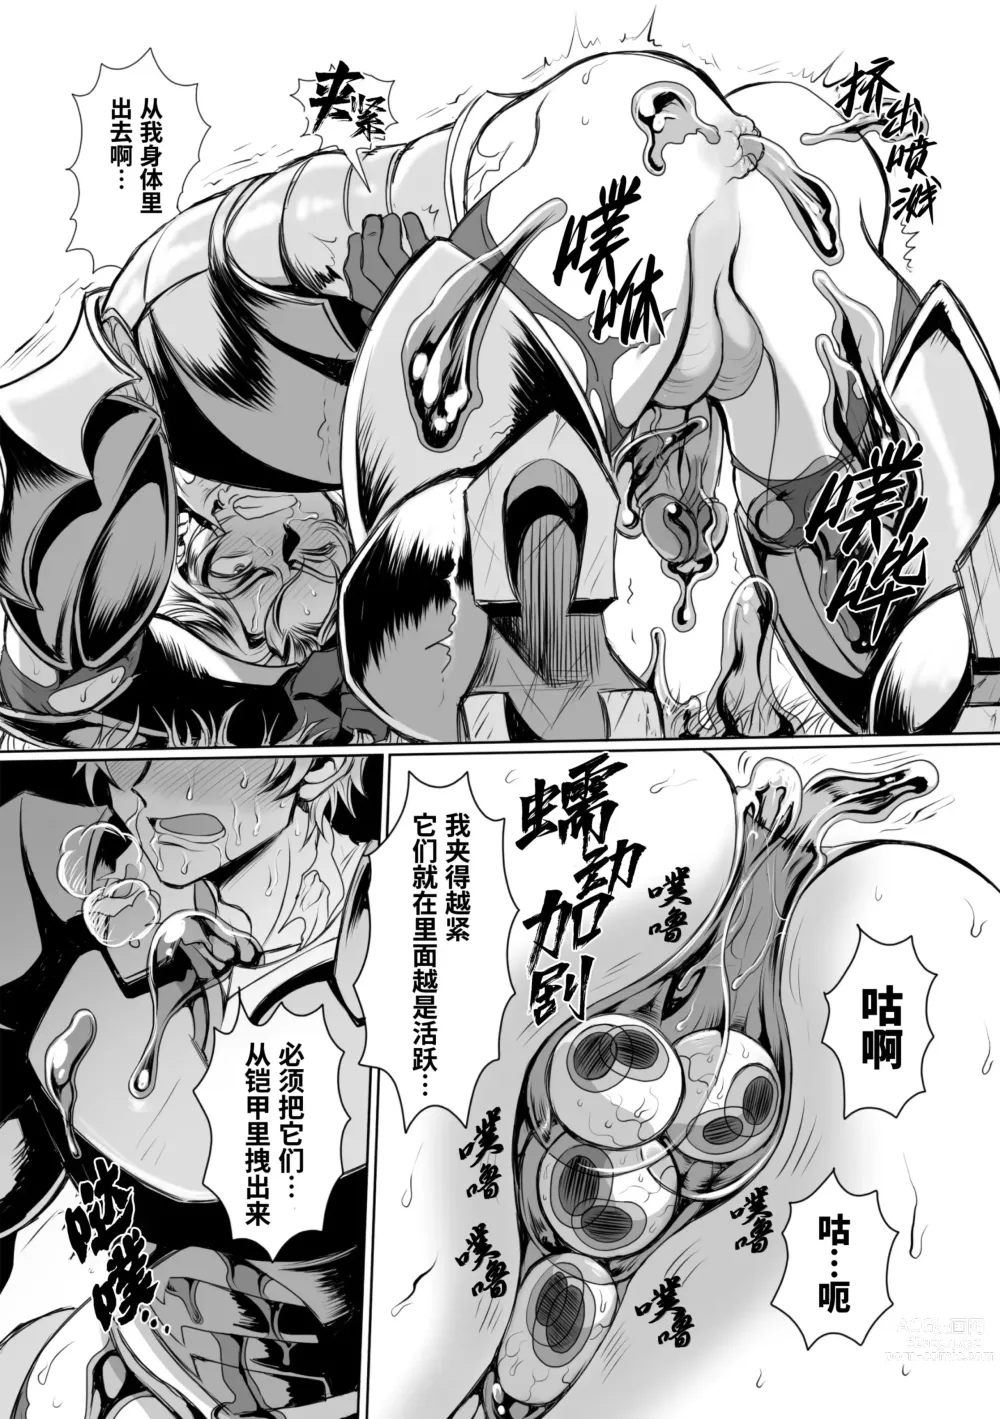 Page 18 of manga  附身奸骑士 斯塔里昂 被恶心男夺取意识凄惨高潮! (decensored)